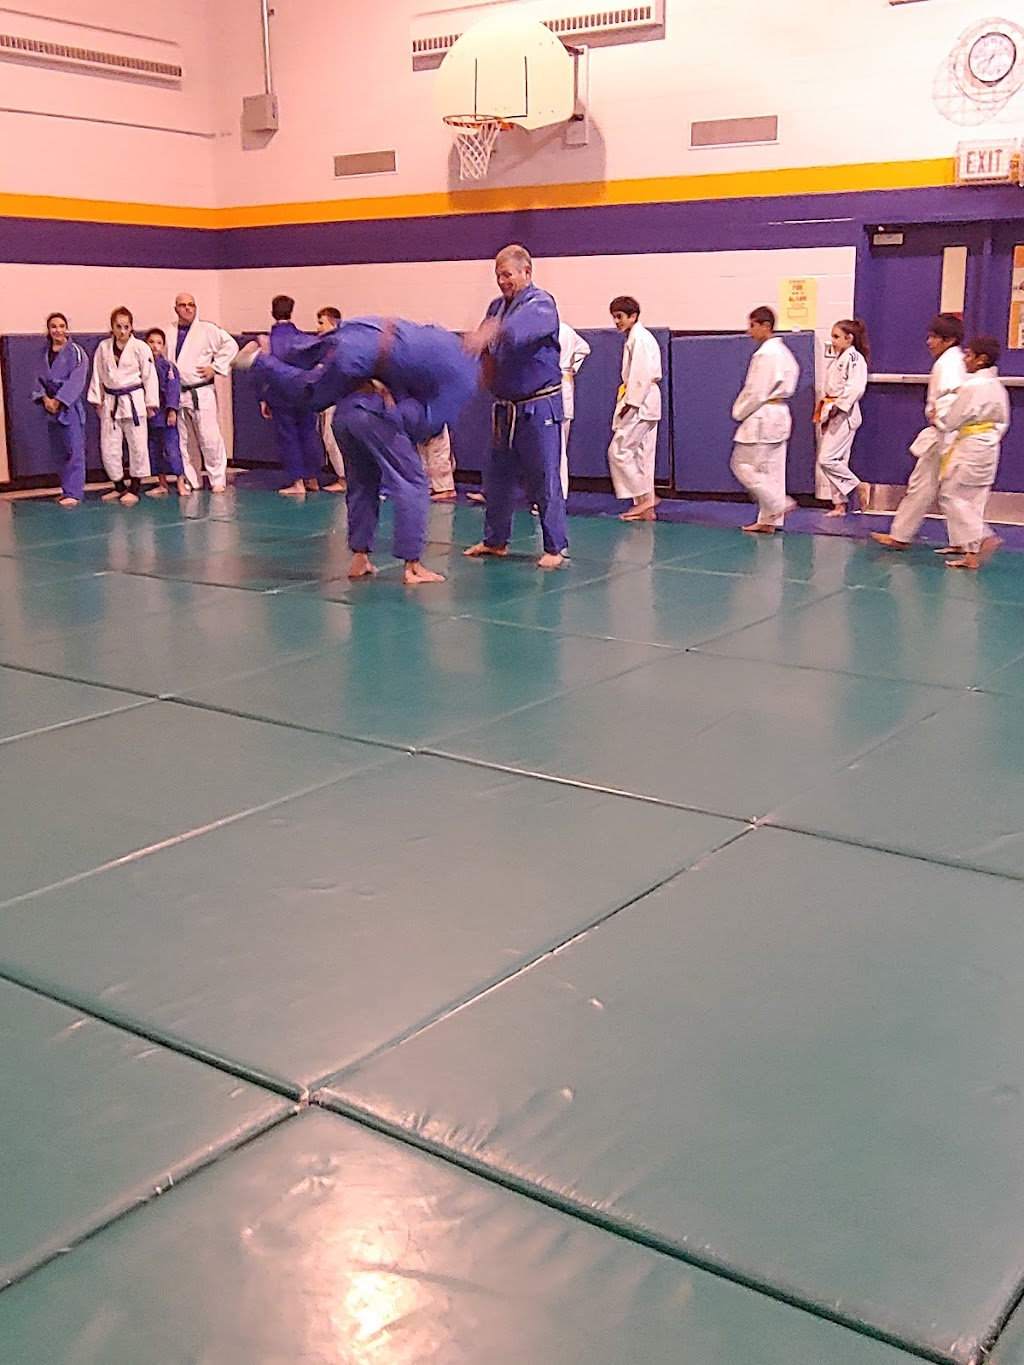 Upper Canada Judo Club | Bobby Orr Room, 99 Thornton Rd S, Oshawa, ON L1J 5Y1, Canada | Phone: (905) 391-2166